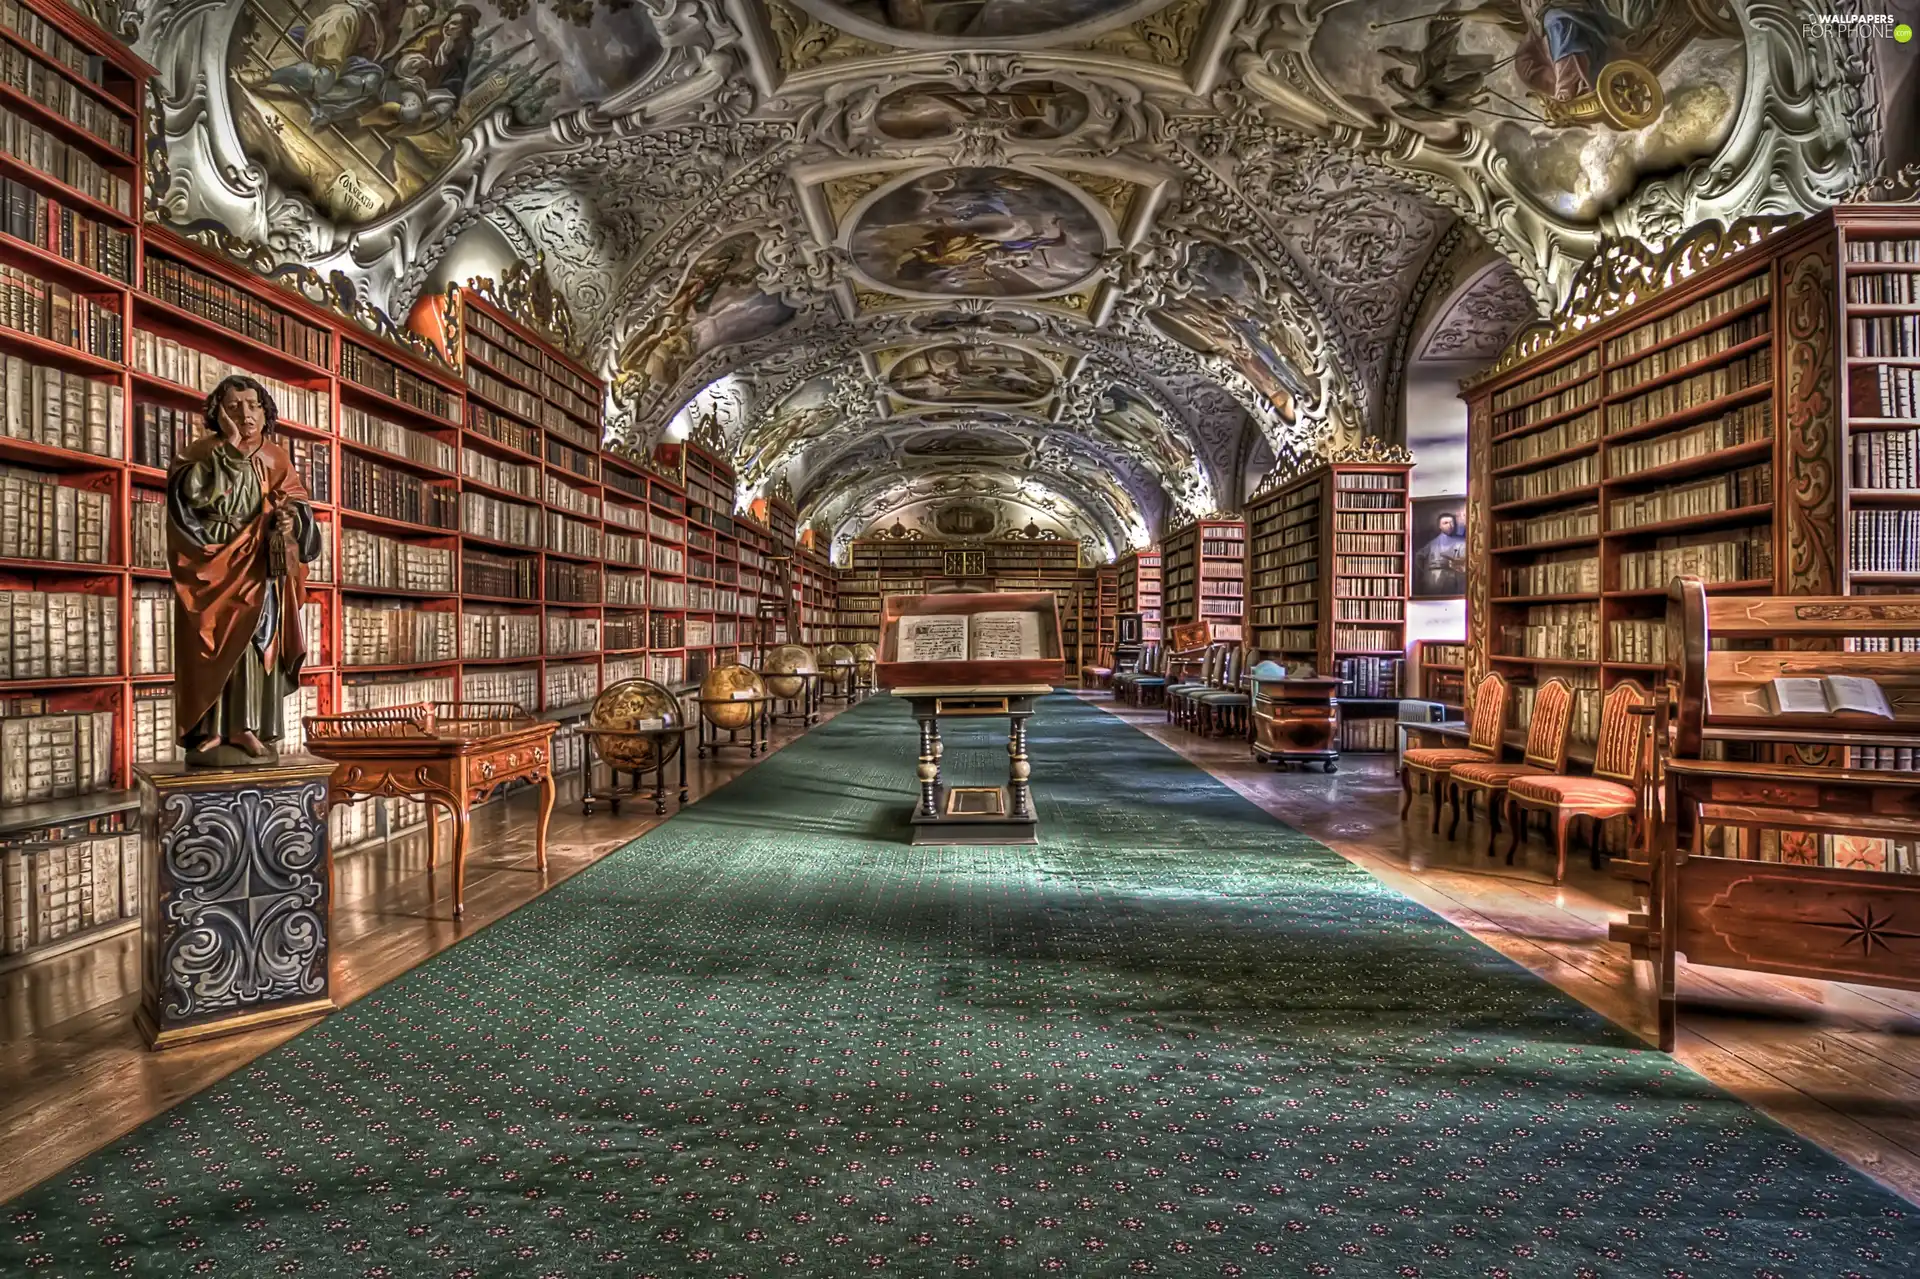 Library, shelves